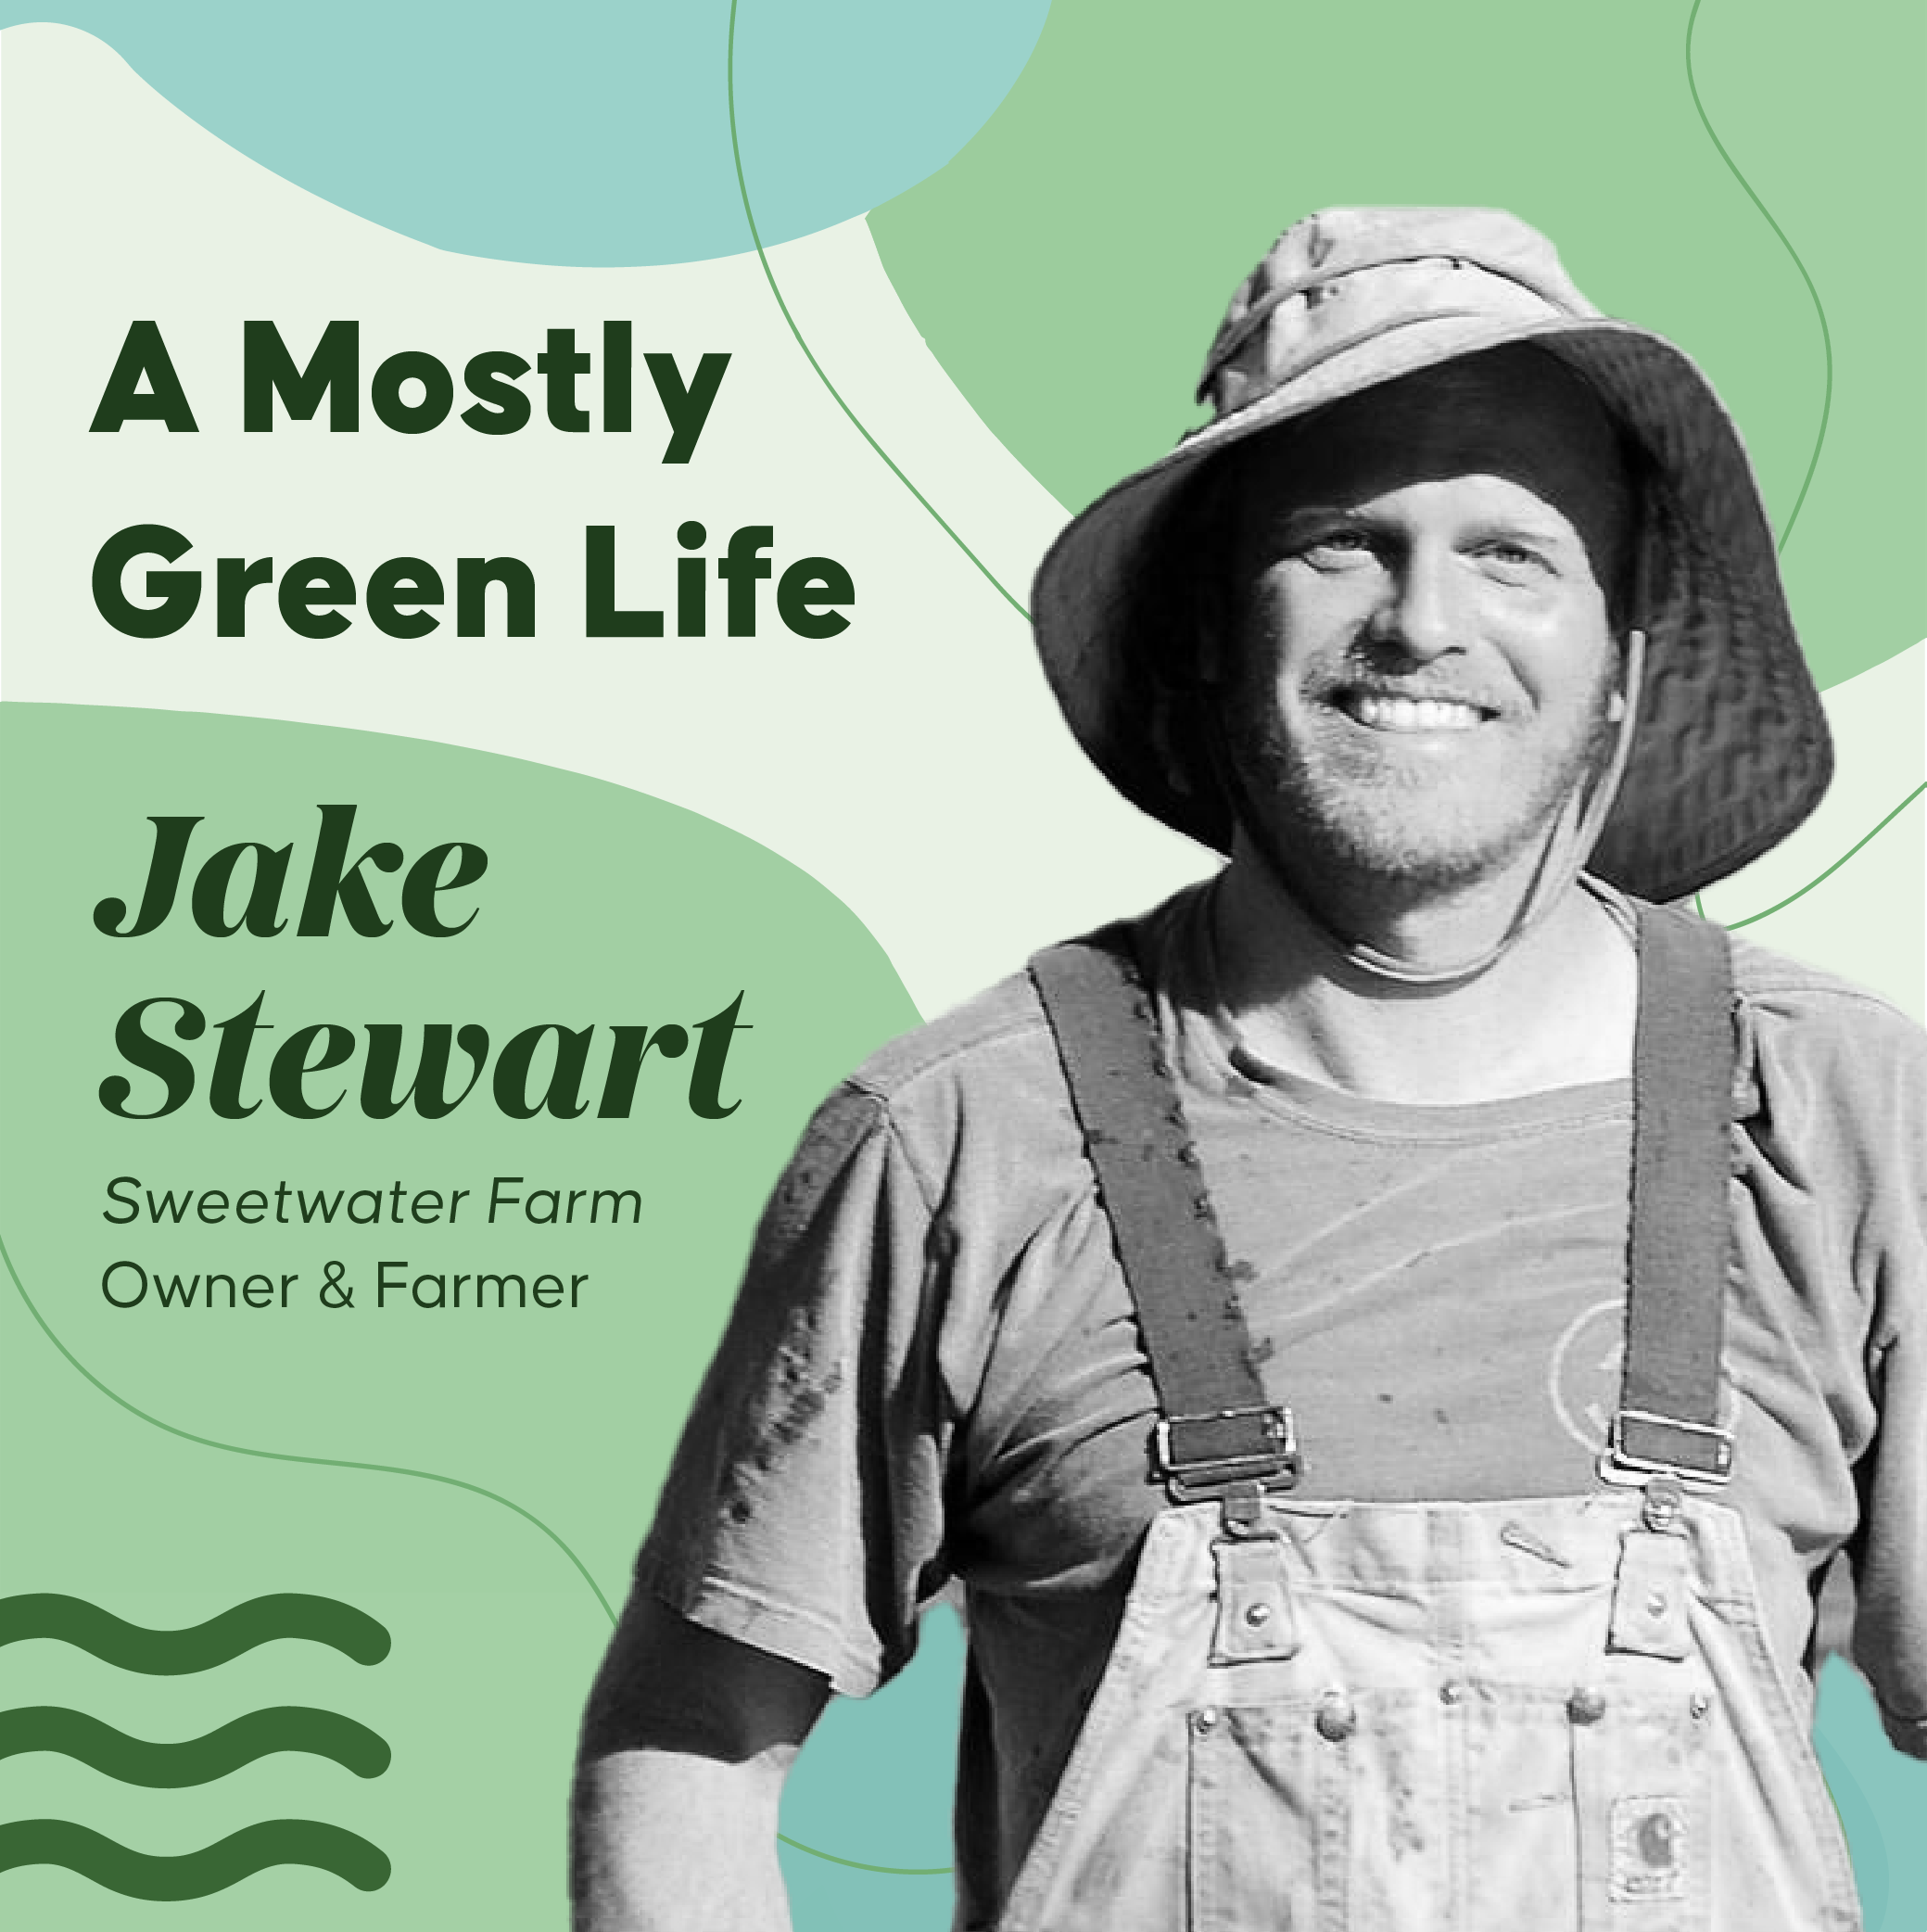 Jake Stewart of Sweetwater Farm & Shire